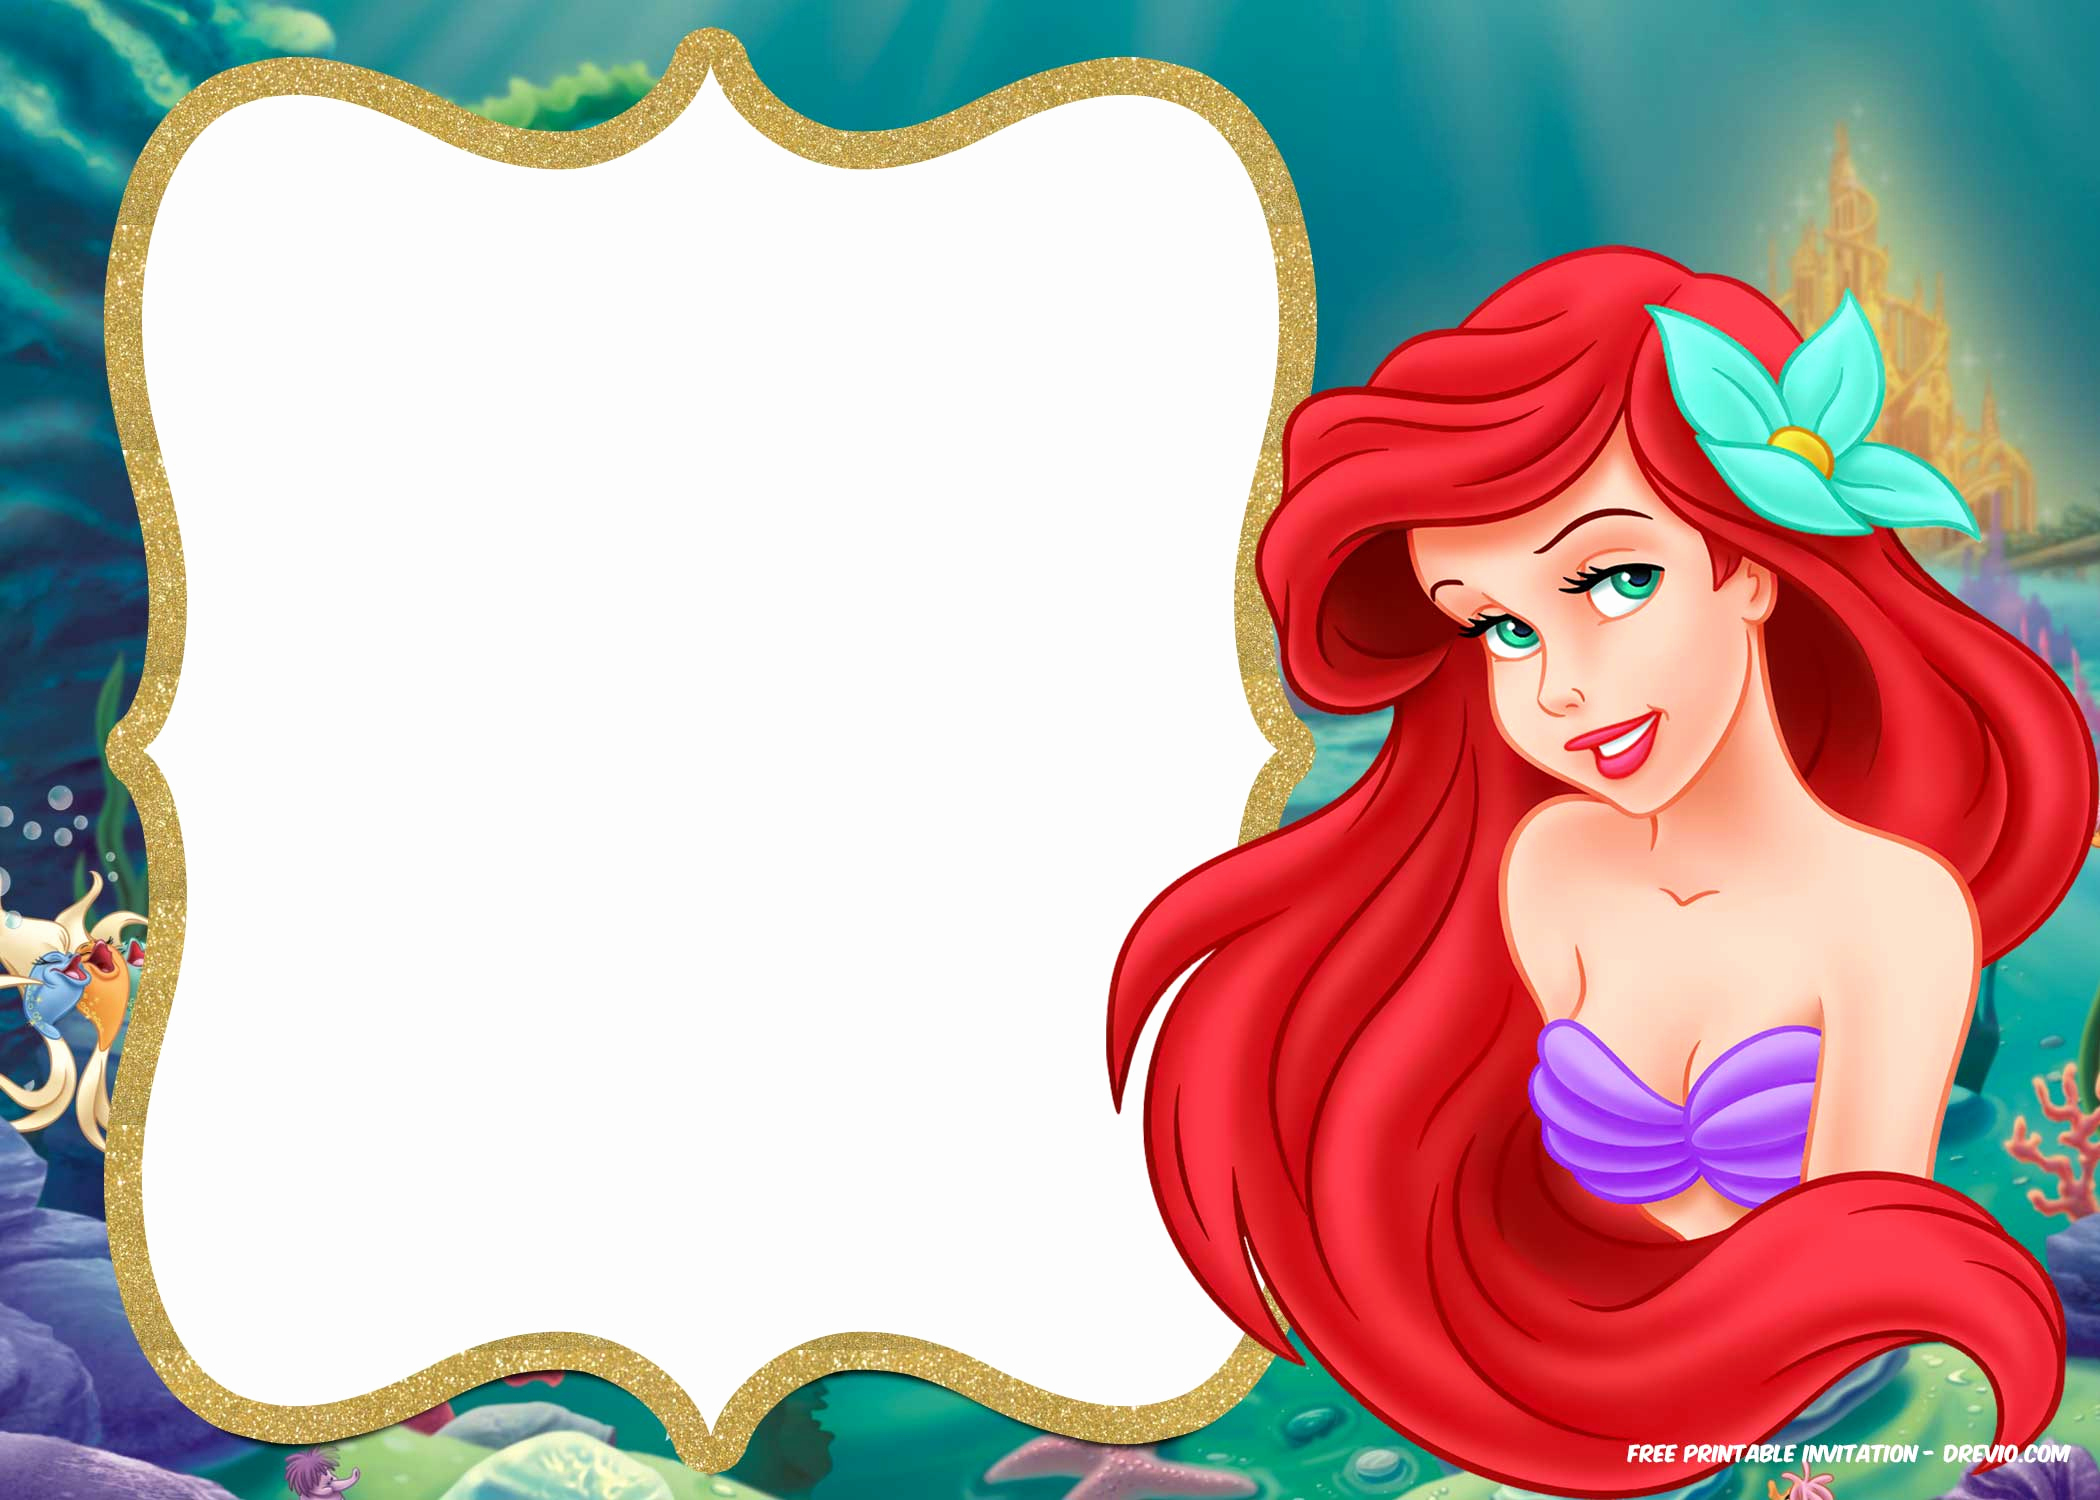 Little Mermaid Birthday Invitation Template Best Of Free Printable Ariel Little Mermaid Invitation Template